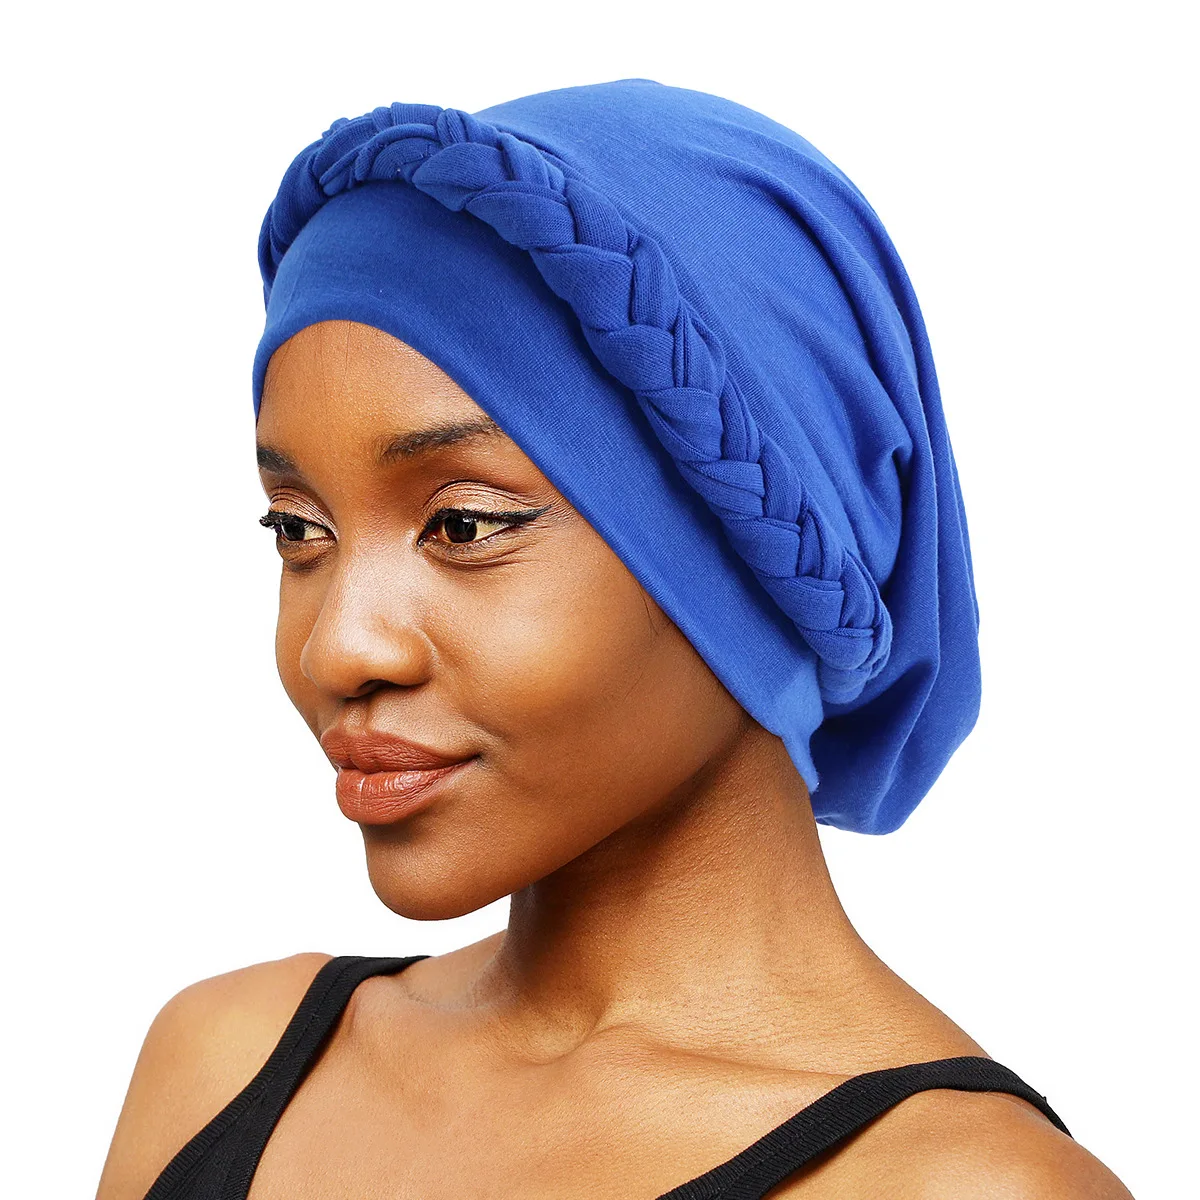 

Indian Turban Braids Women Chemo Cap Muslim Hijab Headscarf Cancer Hair Loss Head Cover Bonnet Hat Headwear Beanies Scarf Wrap